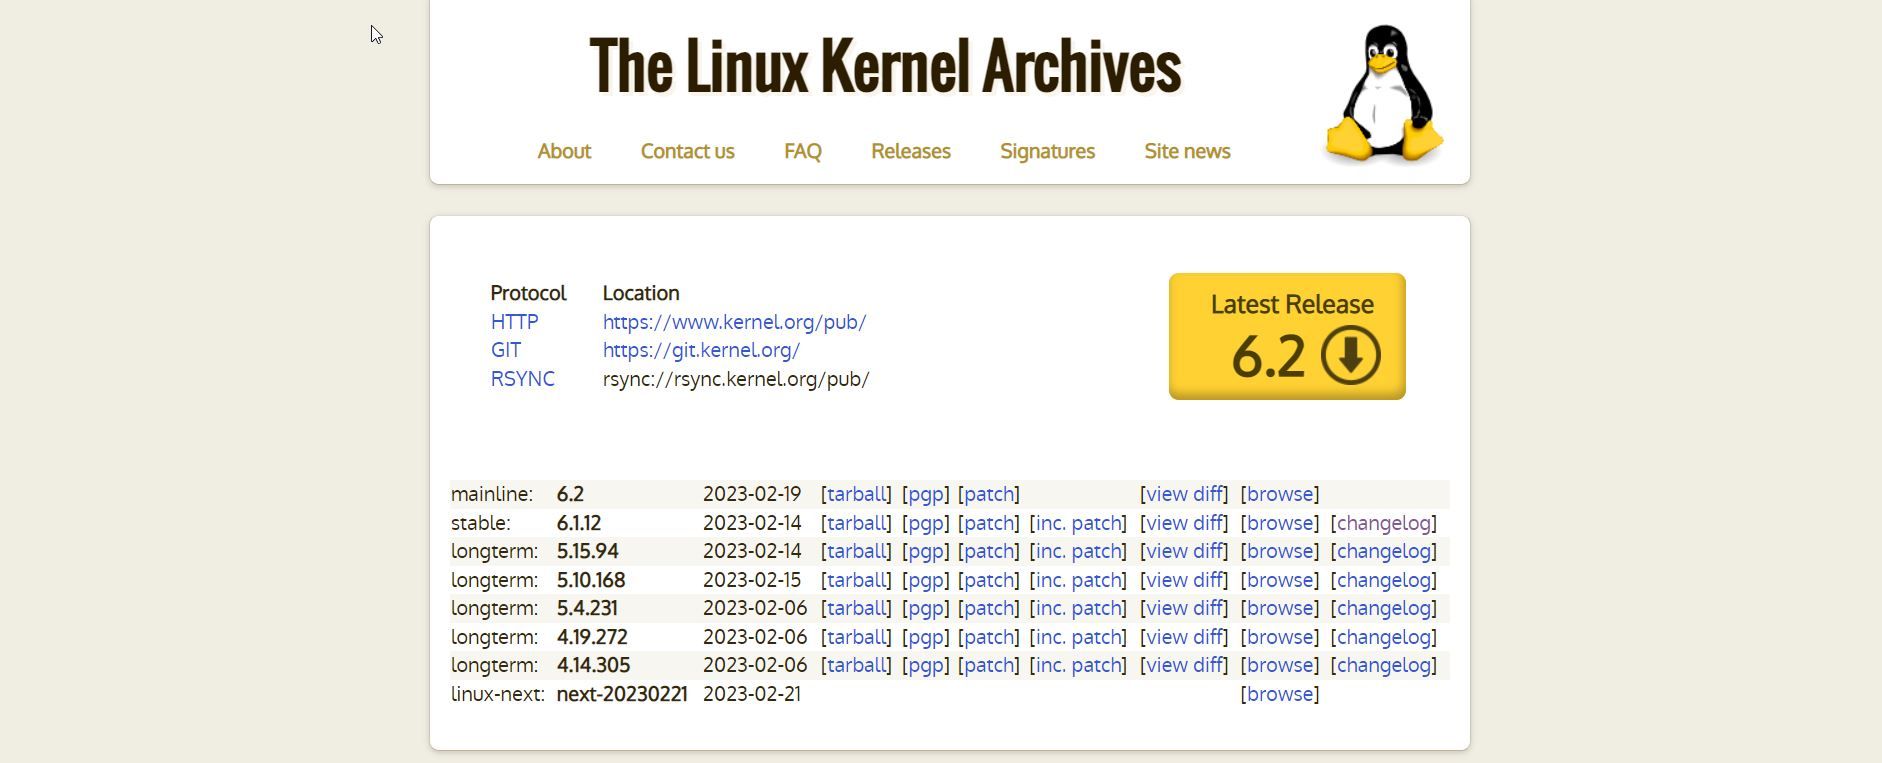 Linux kernel website showing version 6.2